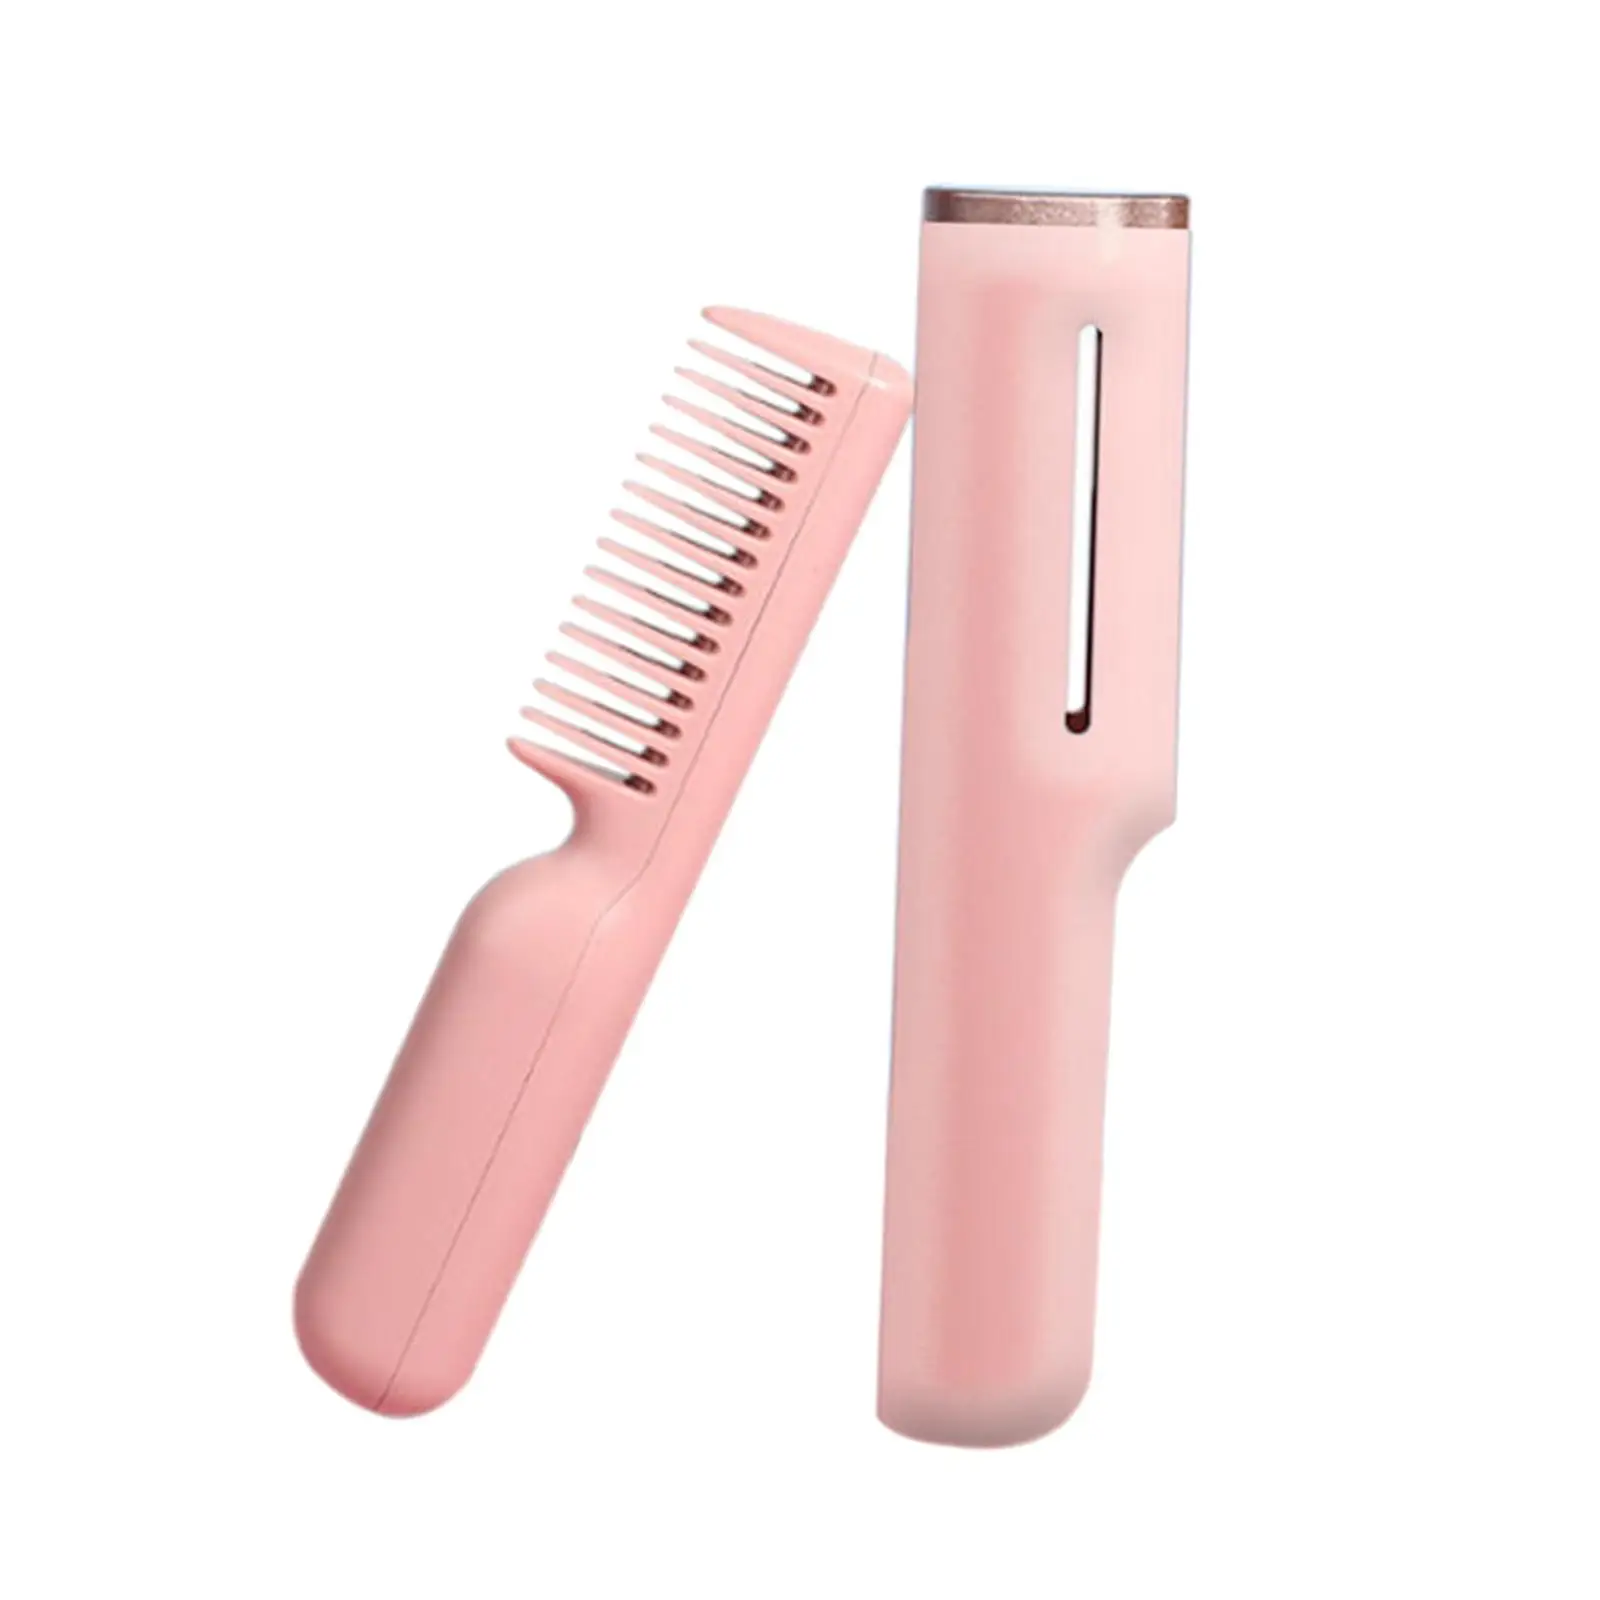 Cordless Hair Straightener Brush Fast Heating Portable Hair Straightening Iron Heated Hair Straightener Comb Straightening Brush